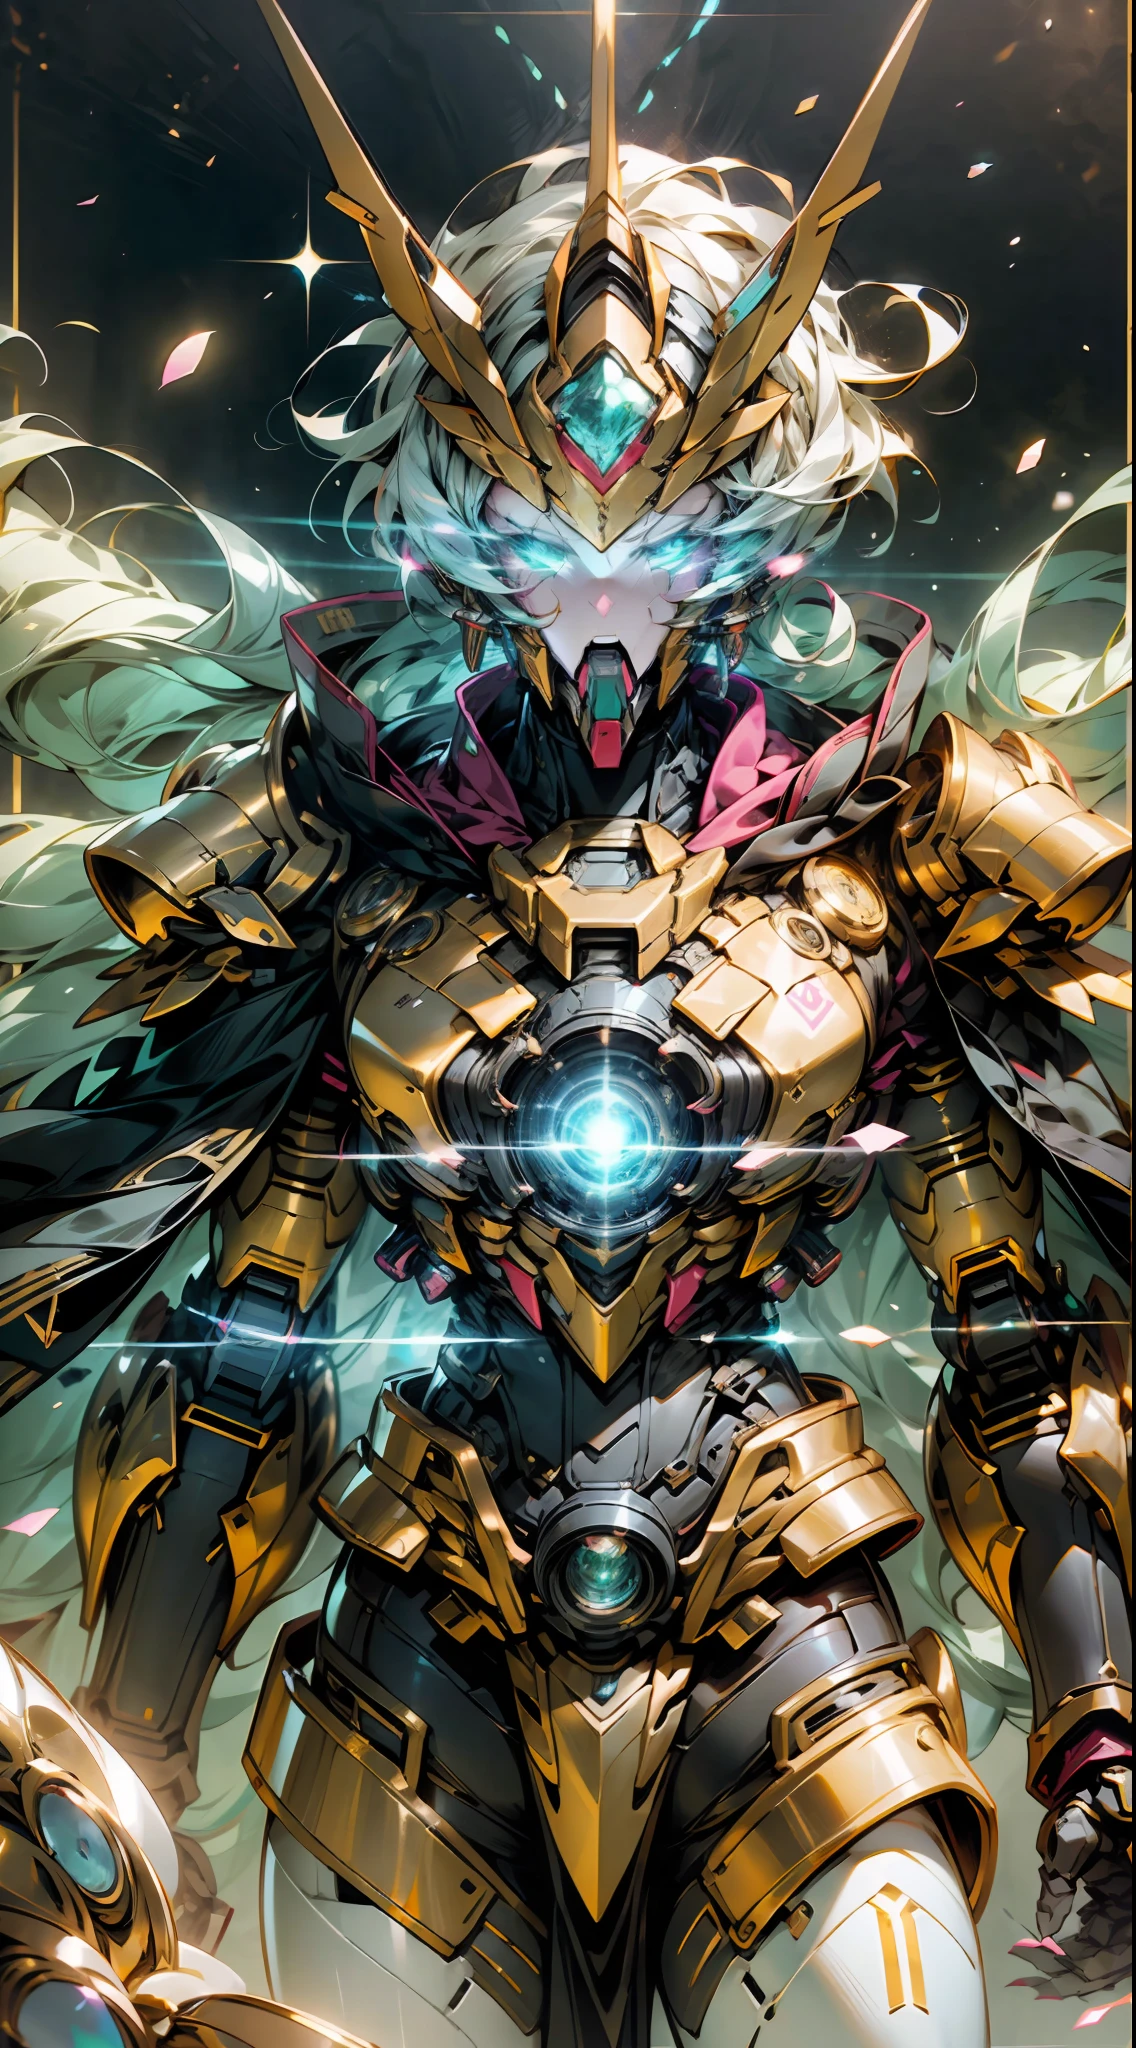 Un Dragón Emperador en la Vía Láctea, Superficie del sol en el fondo, Golden Saint Seiya Limb armadura, (Cloak), (símbolo del dragón: 1.5), (Gundam Exia: 1.5), (cielo estrellado: 1.8) (mecha) (mechanical) (armadura), (pierna abierta: 1.3), Perfecto, (gran angular), (fondo negro: 1.6), mejor calidad, Obra maestra, súper resolución, (realidad: 1.4), Detalle loco, estilo de motor poco realista, efecto boca, Lente estilo David La Chapelle, paleta bioluminiscente: azul claro, Luz de oro, Rosa claro, blanco brillante, gran angular, ultra-fine, bodegón cinematográfico, vibrante, estilo sakimichan, ojos perfectos, máxima calidad de imagen 8K, inspirado en harry winston, Obra maestra de disparo de Canon EOS R 6 "Caos 50,--, lunar debajo del ojo, trazado de rayos, surrealism, piel texturizada --t2